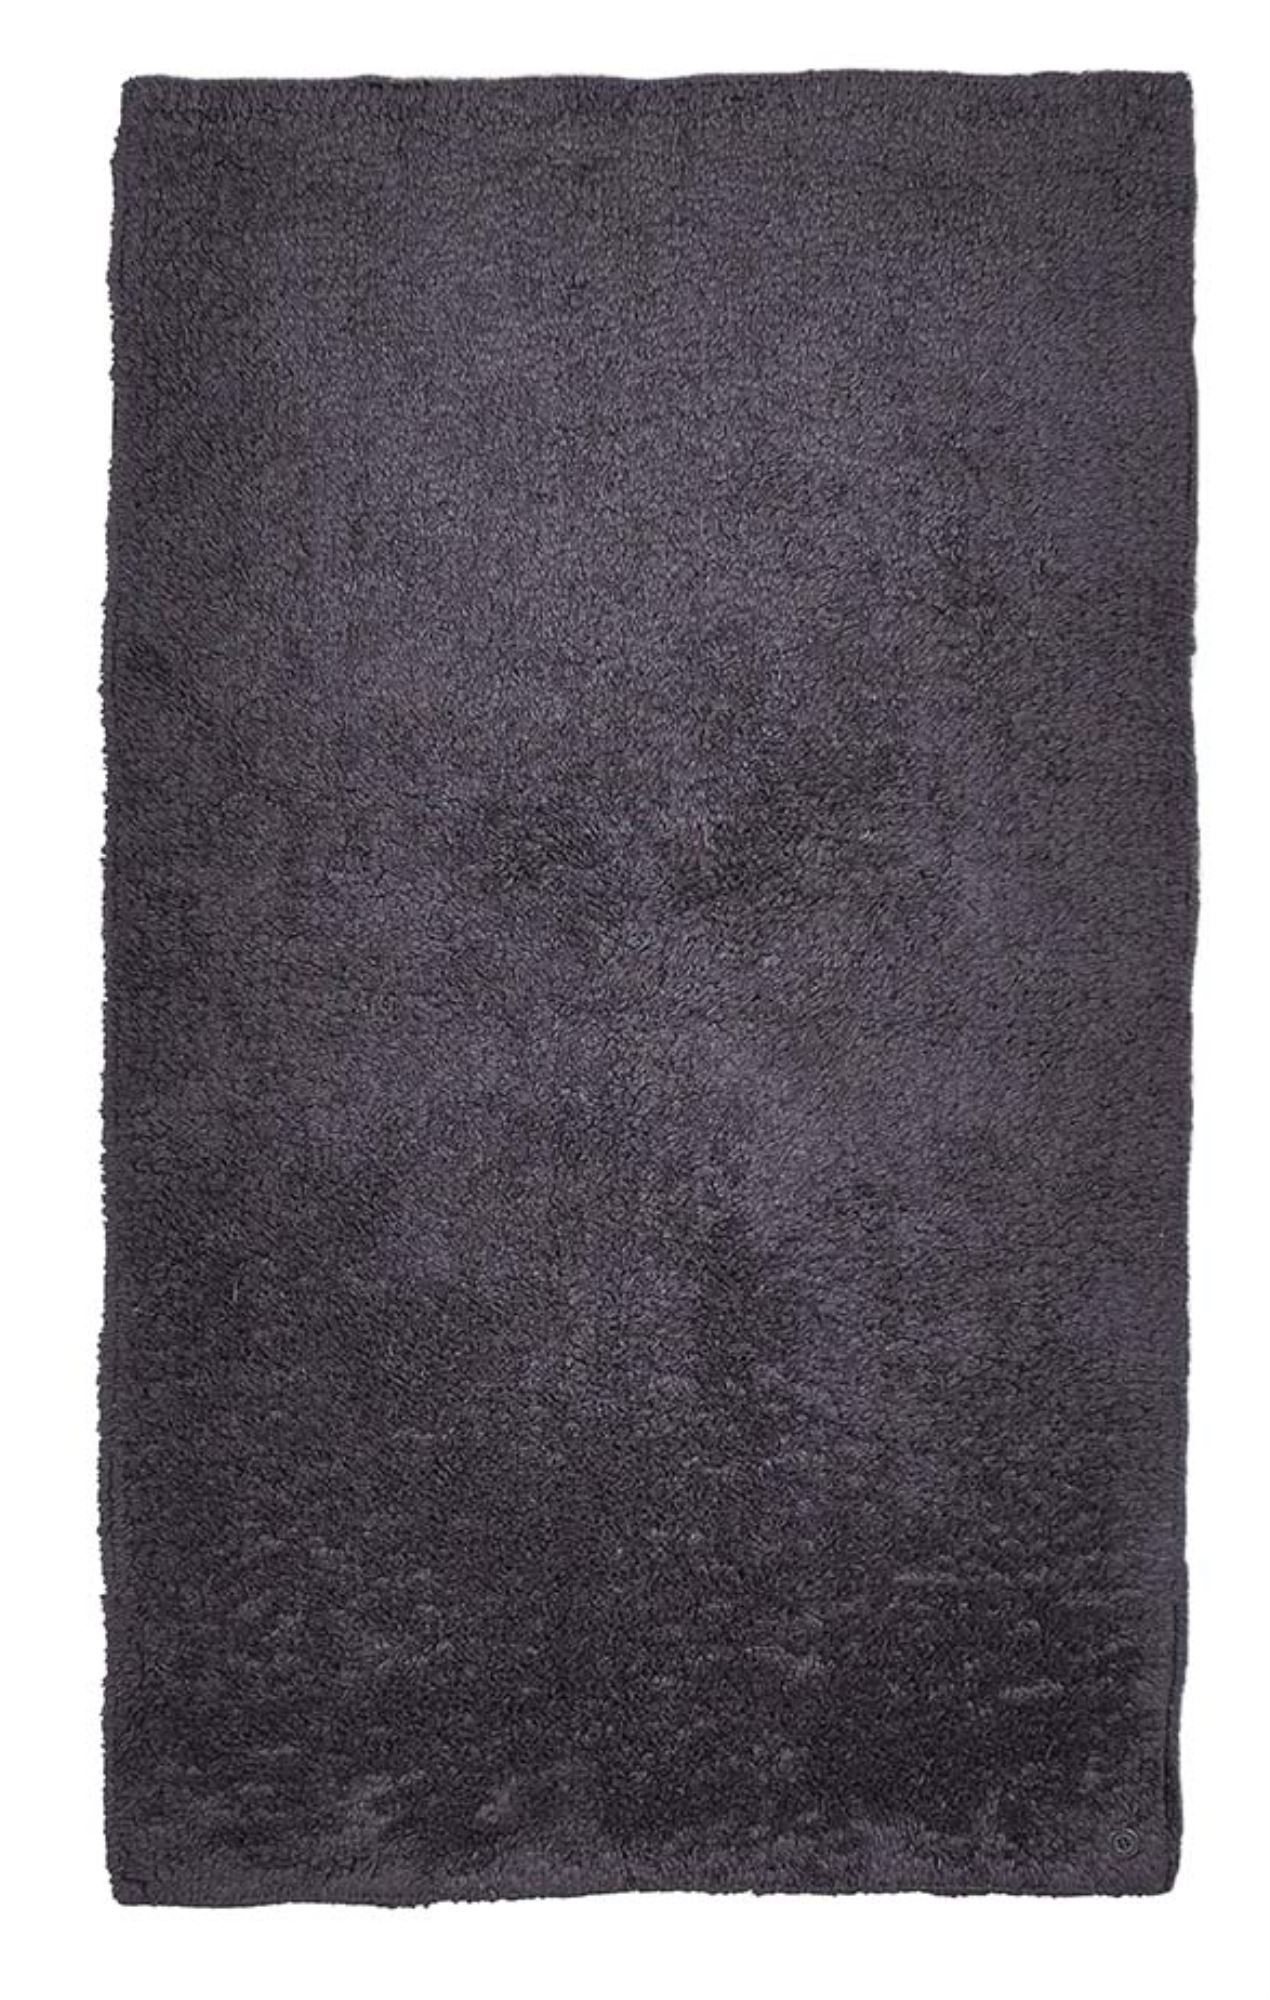 tapis de bain en coton tufté à la main - anthracite 70x120 cm